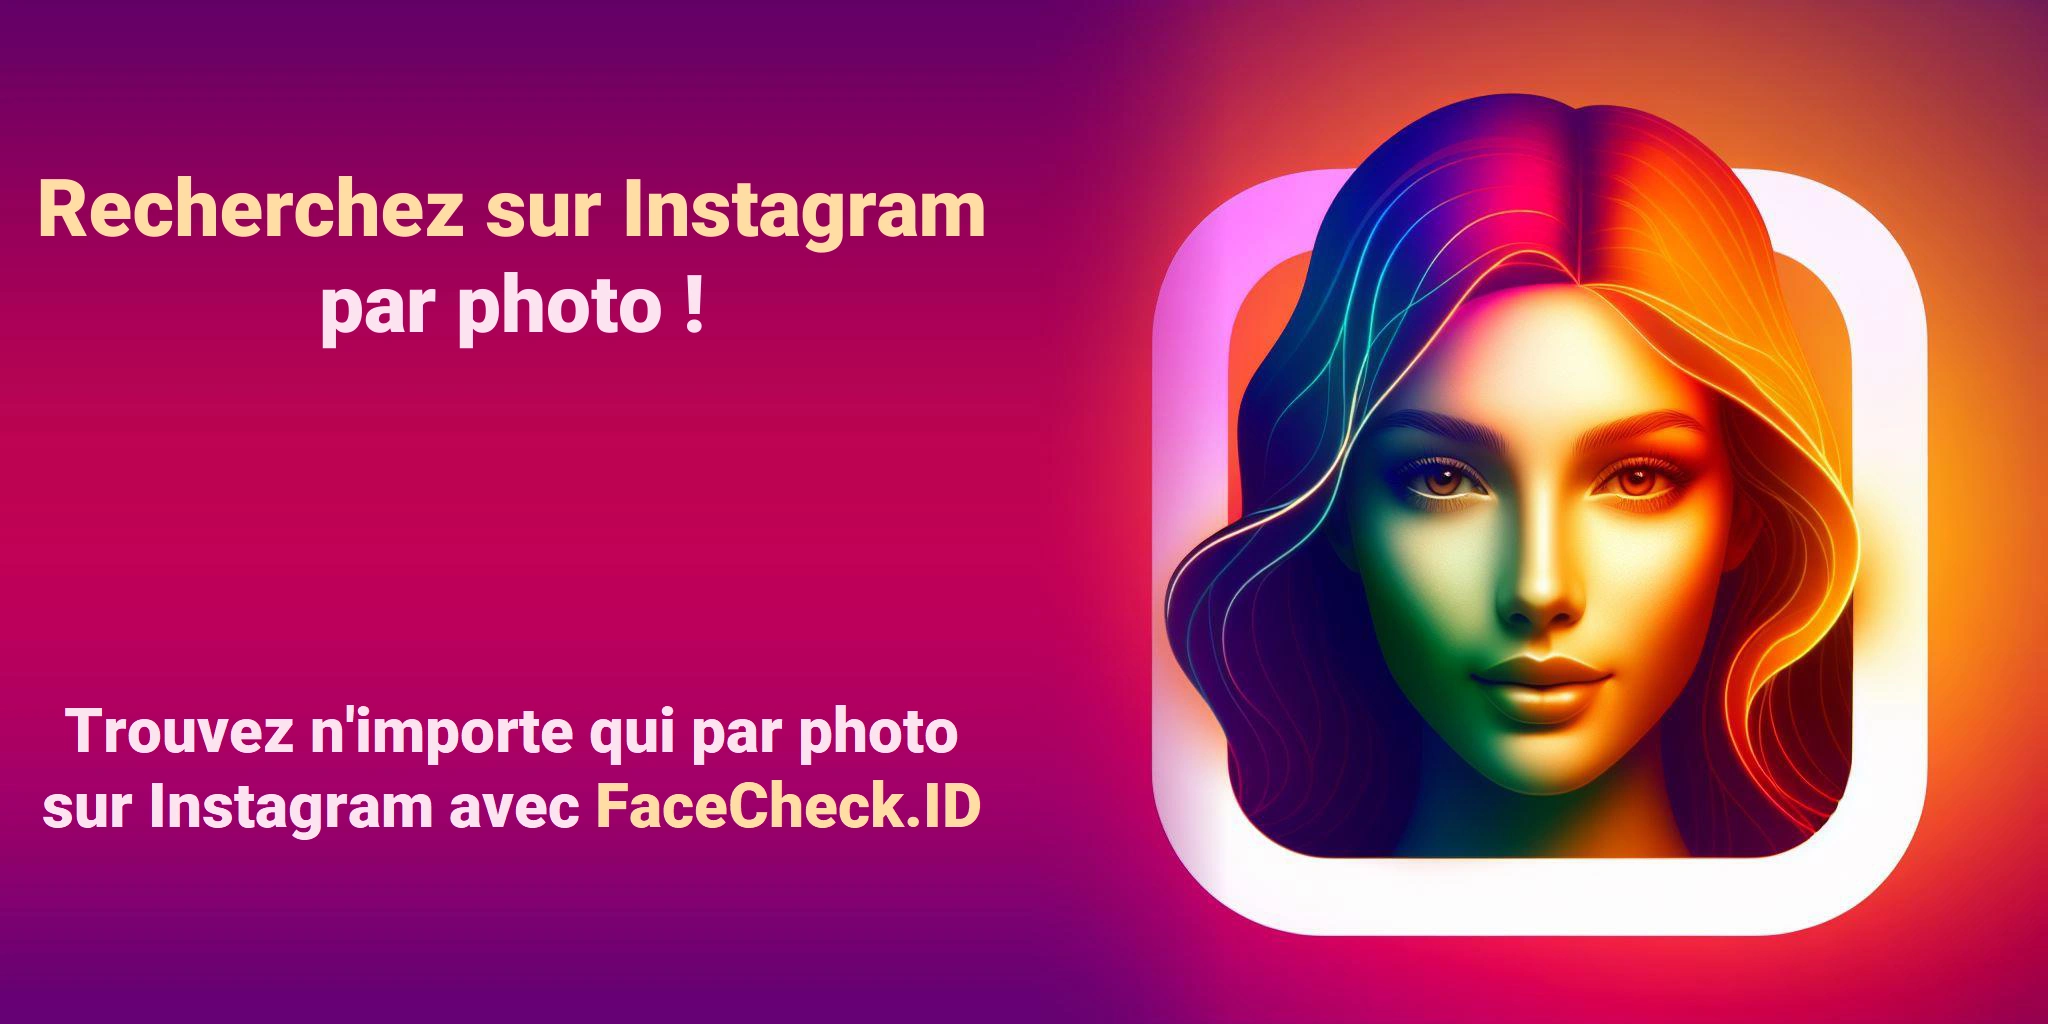 Recherchez sur Instagram par photo ! Trouvez n'importe qui par photo sur Instagram avec FaceCheck.ID